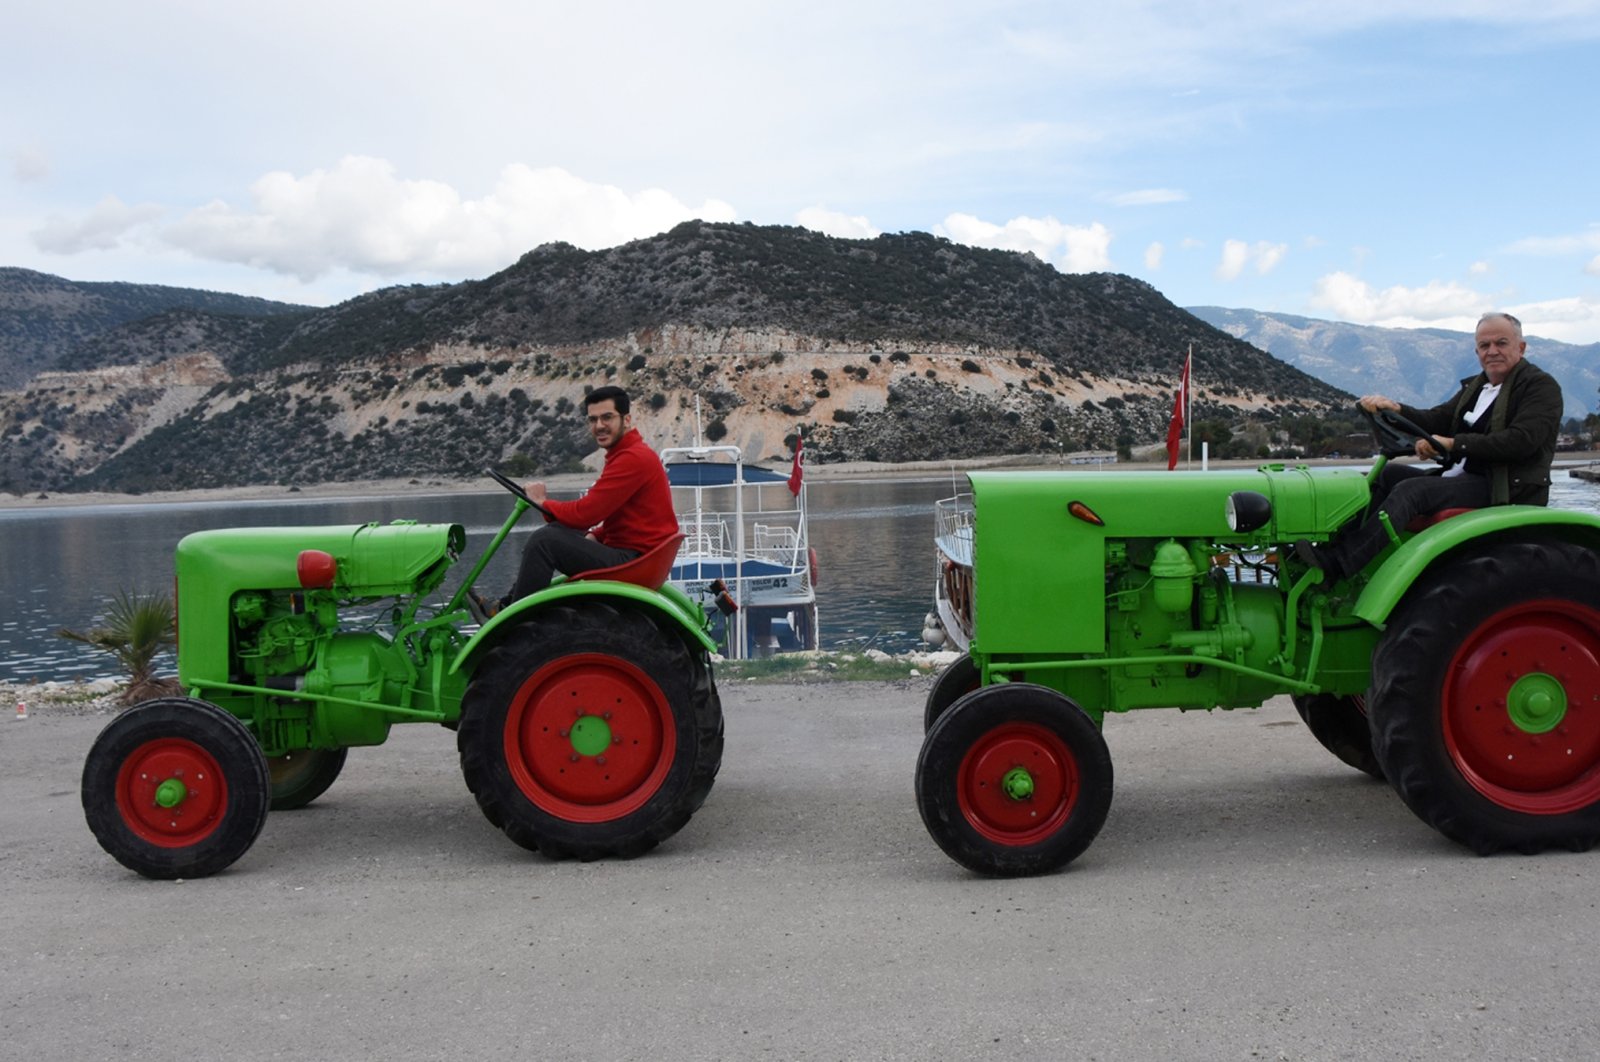 Cucu mengembalikan traktor lokal yang berharga untuk generasi mendatang